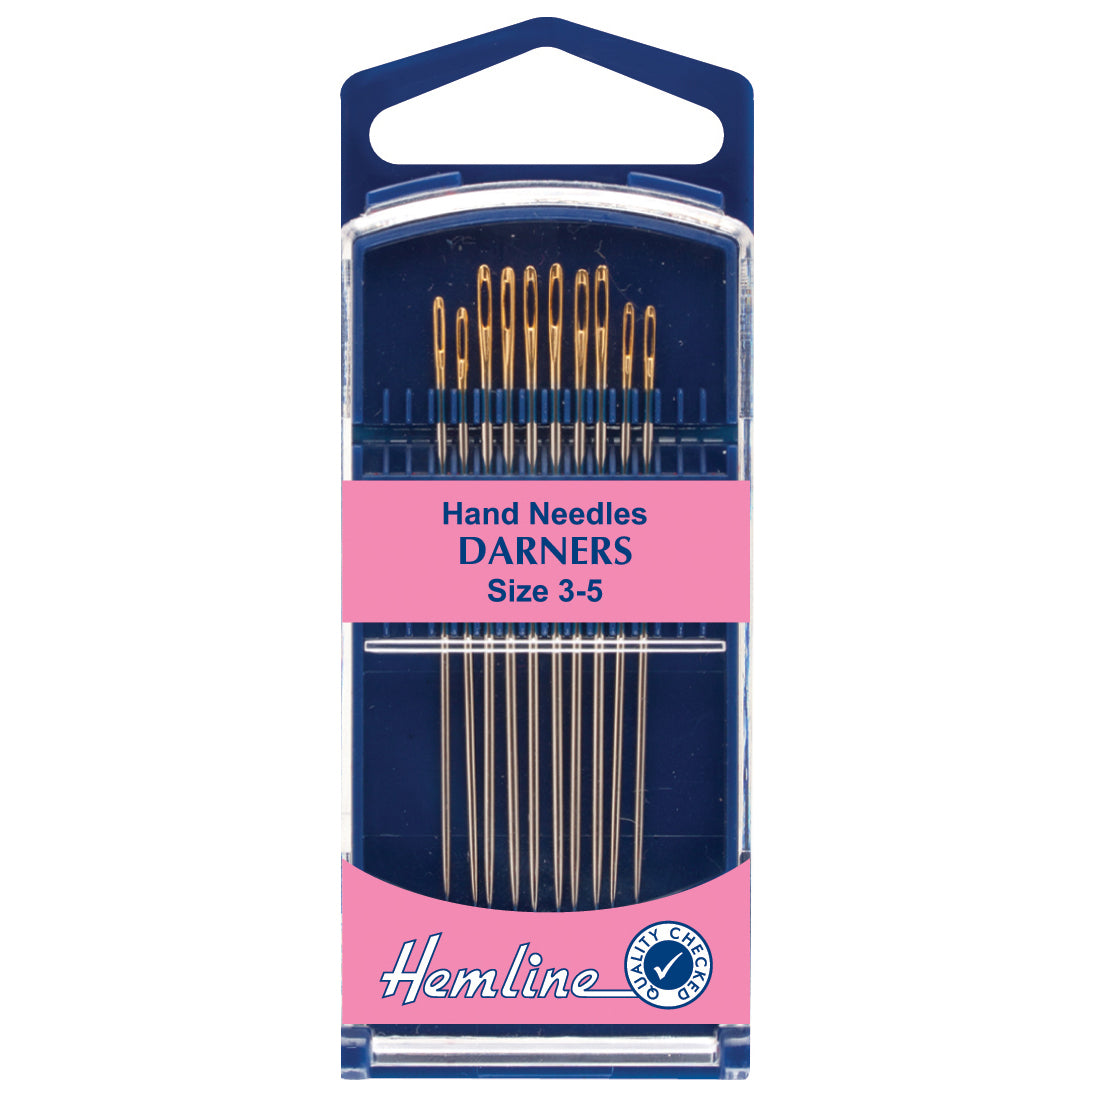 Hemline Premium Hand Needles Darners sizes 3 to 5 